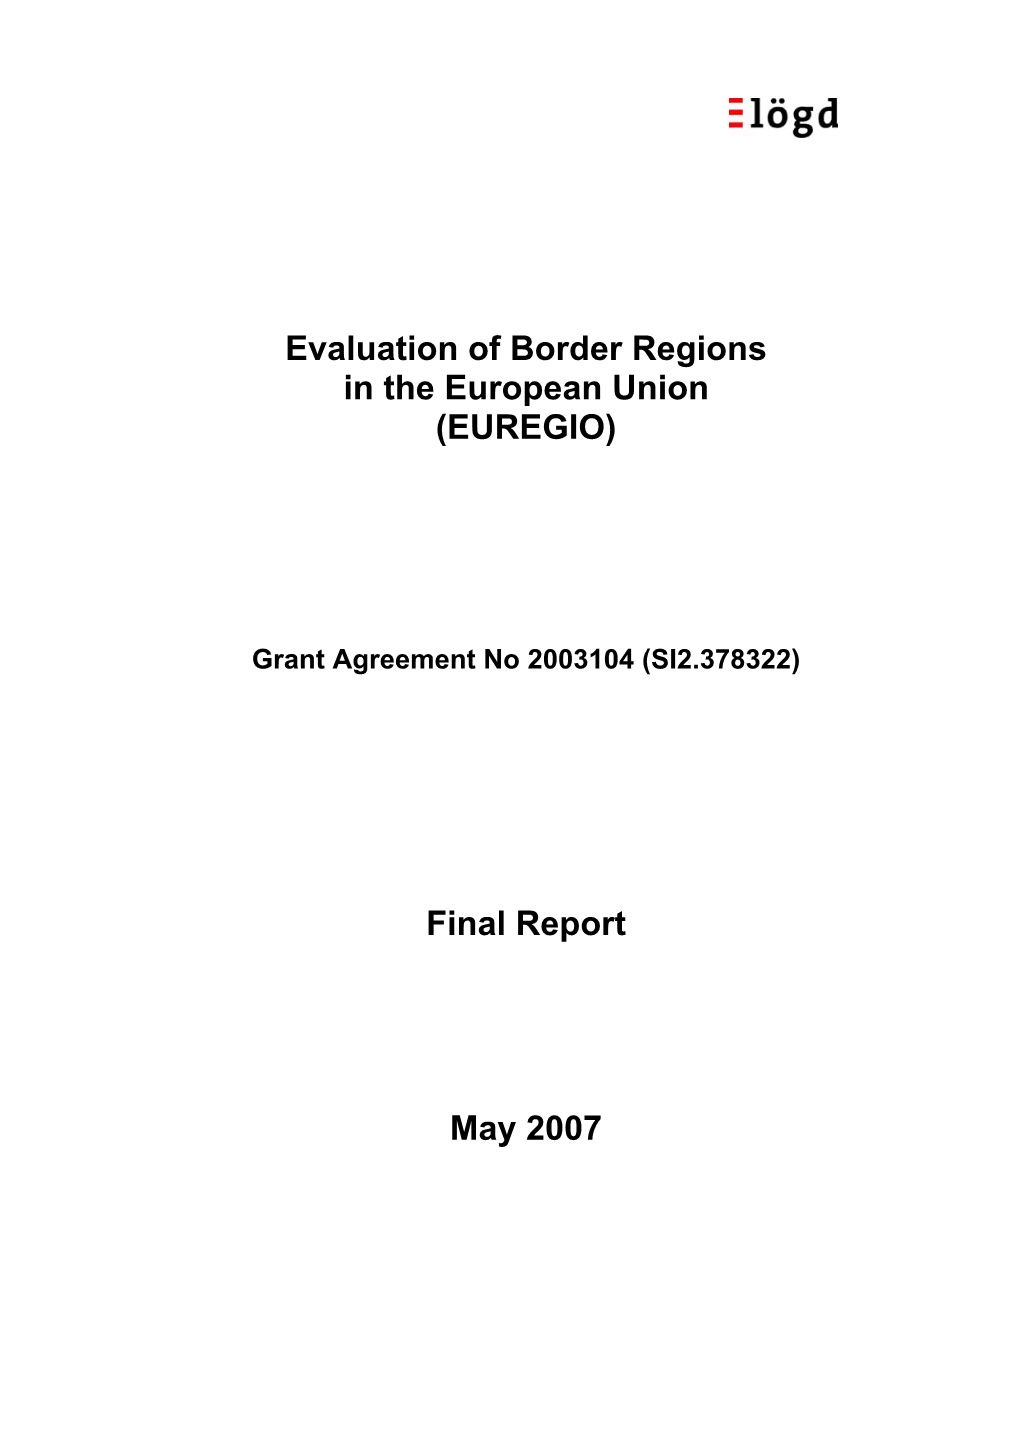 Evaluation of Border Regions in the European Union (EUREGIO)